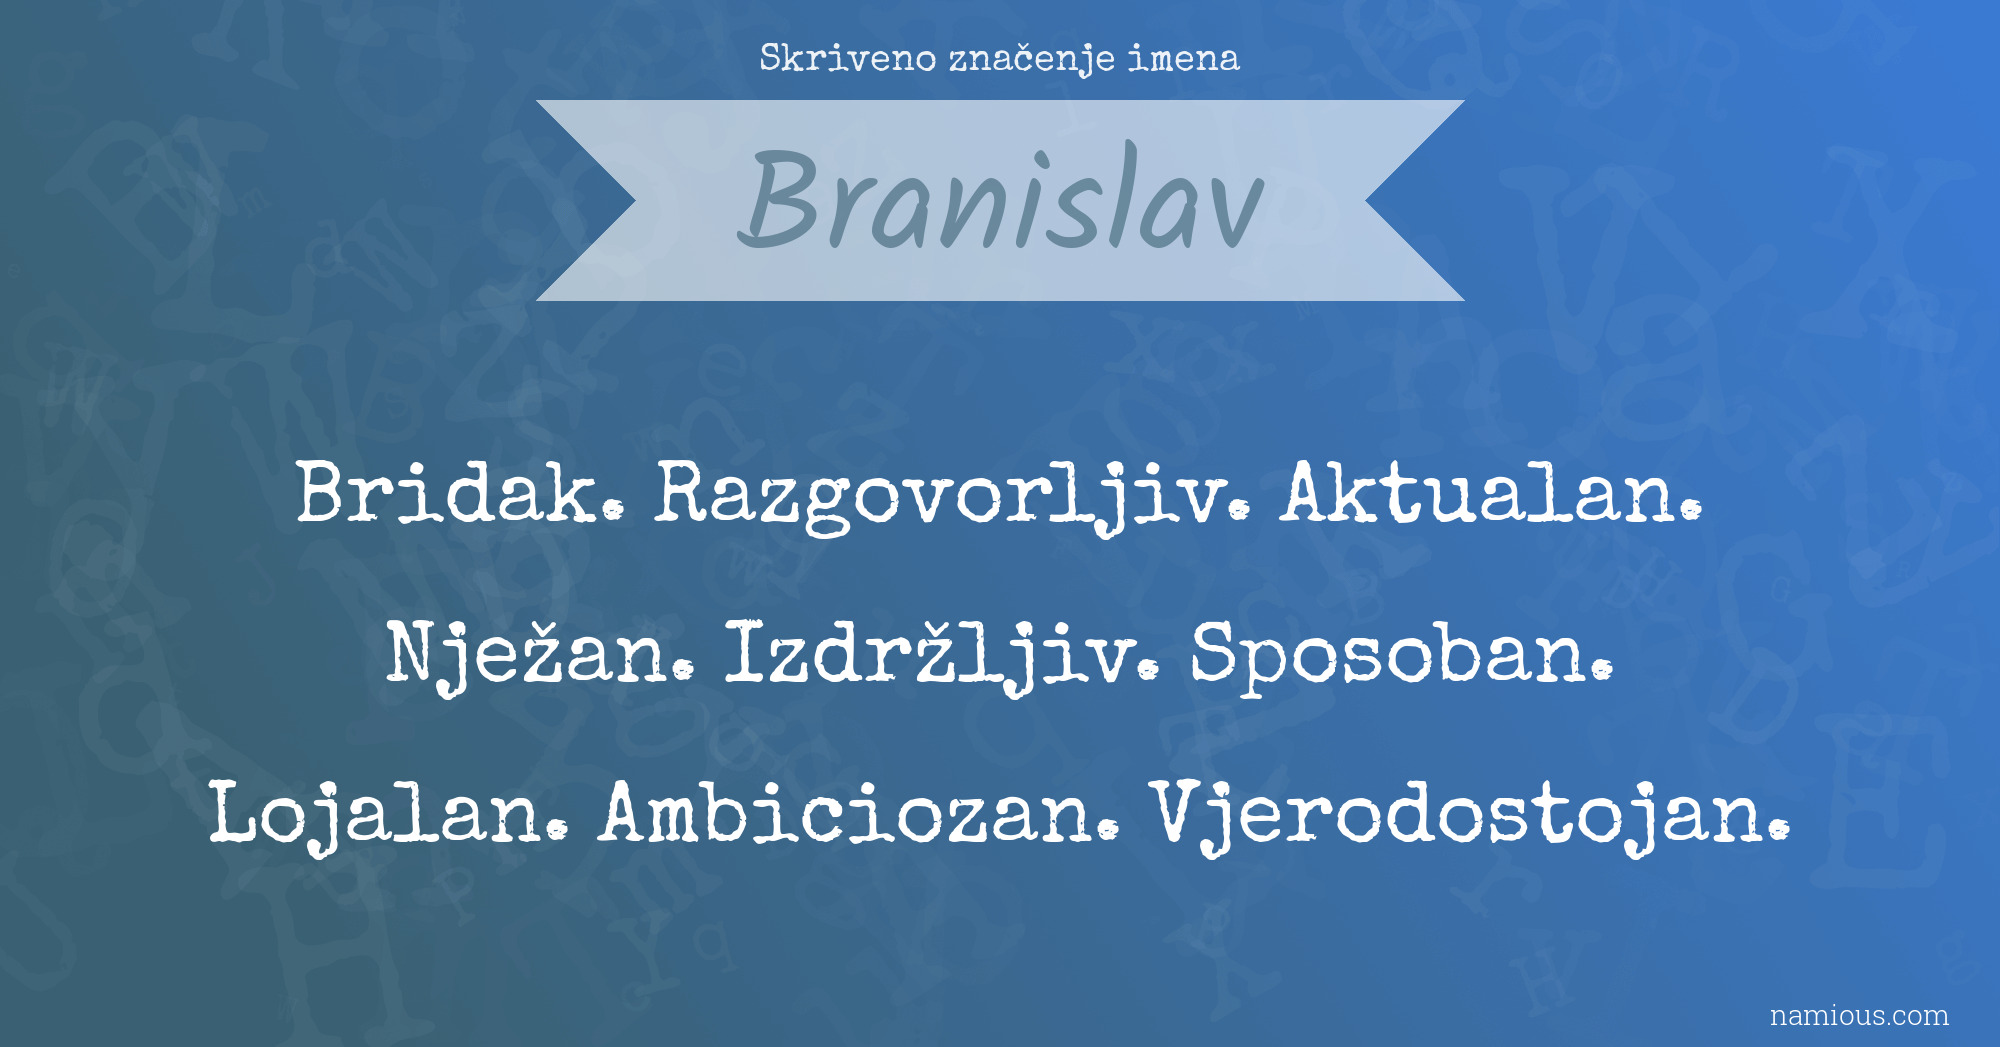 Skriveno značenje imena Branislav